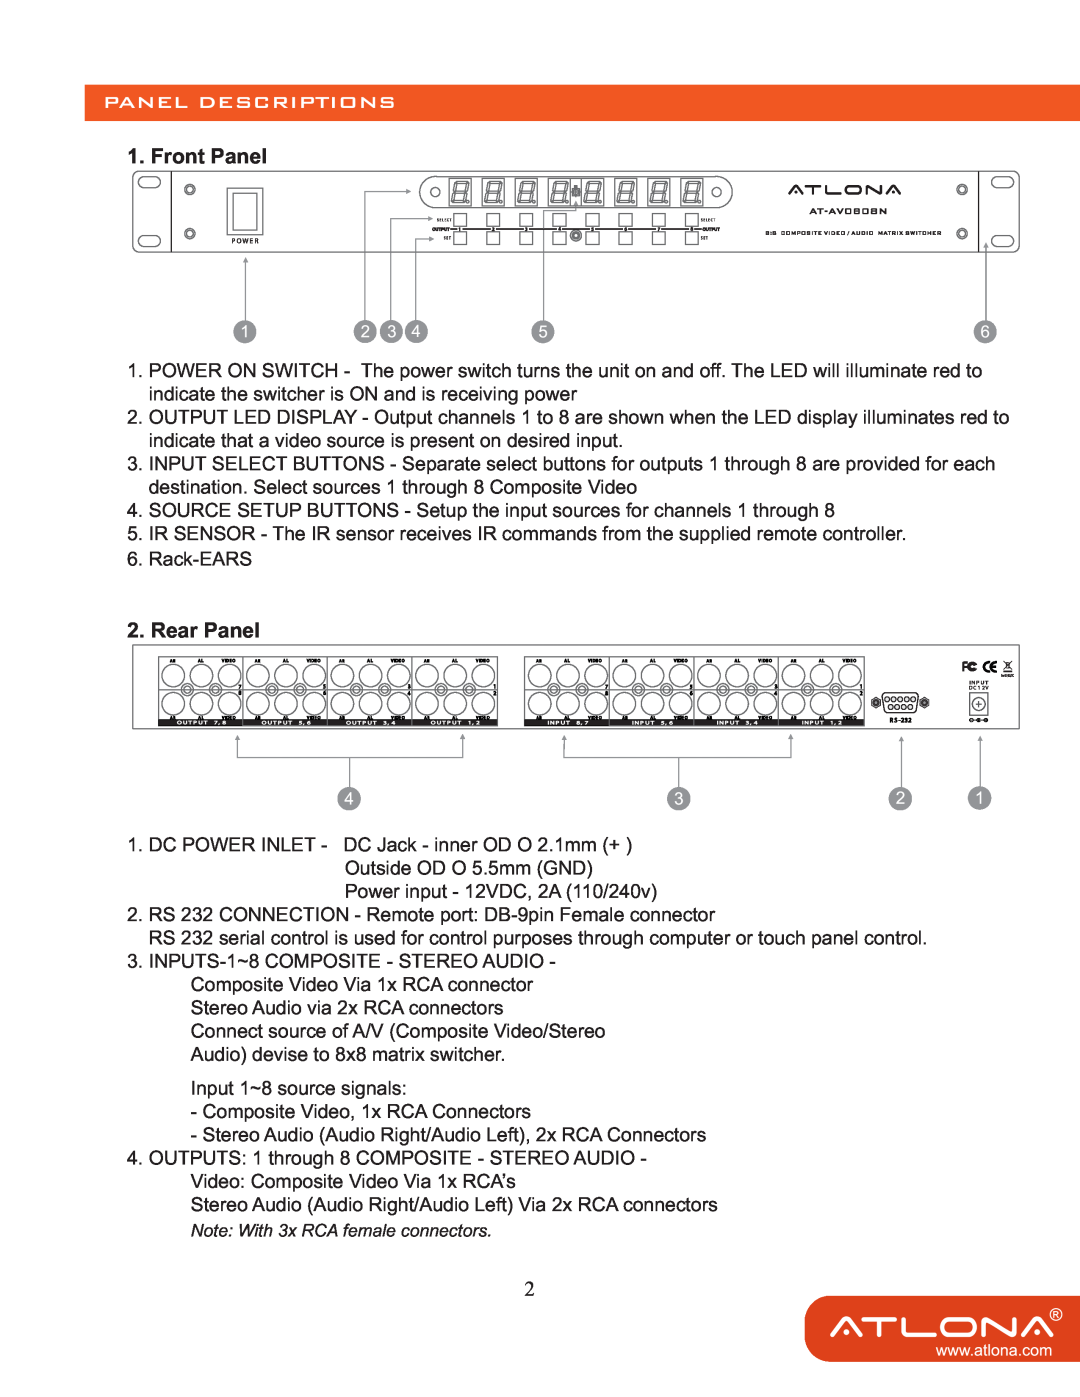 Atlona AT-AV0808N user manual Panel Descriptions, Front Panel, Rear Panel 